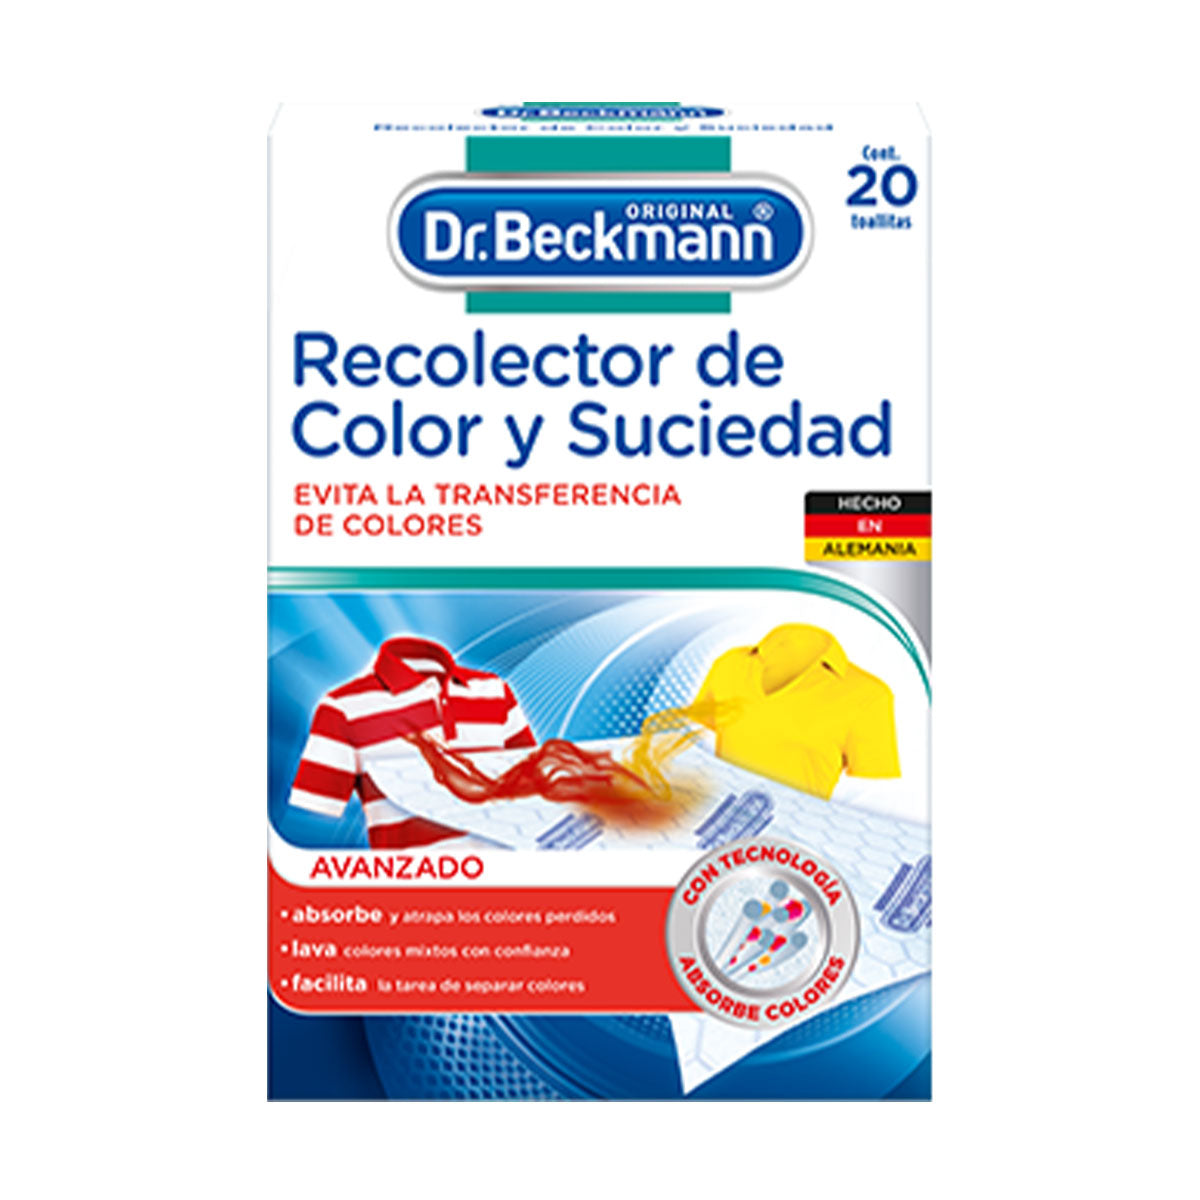 Recolector de Color y Suciedad para Lavado de Ropa 20 Toallitas Dr. Beckmann. Producto Alemán Sustentable